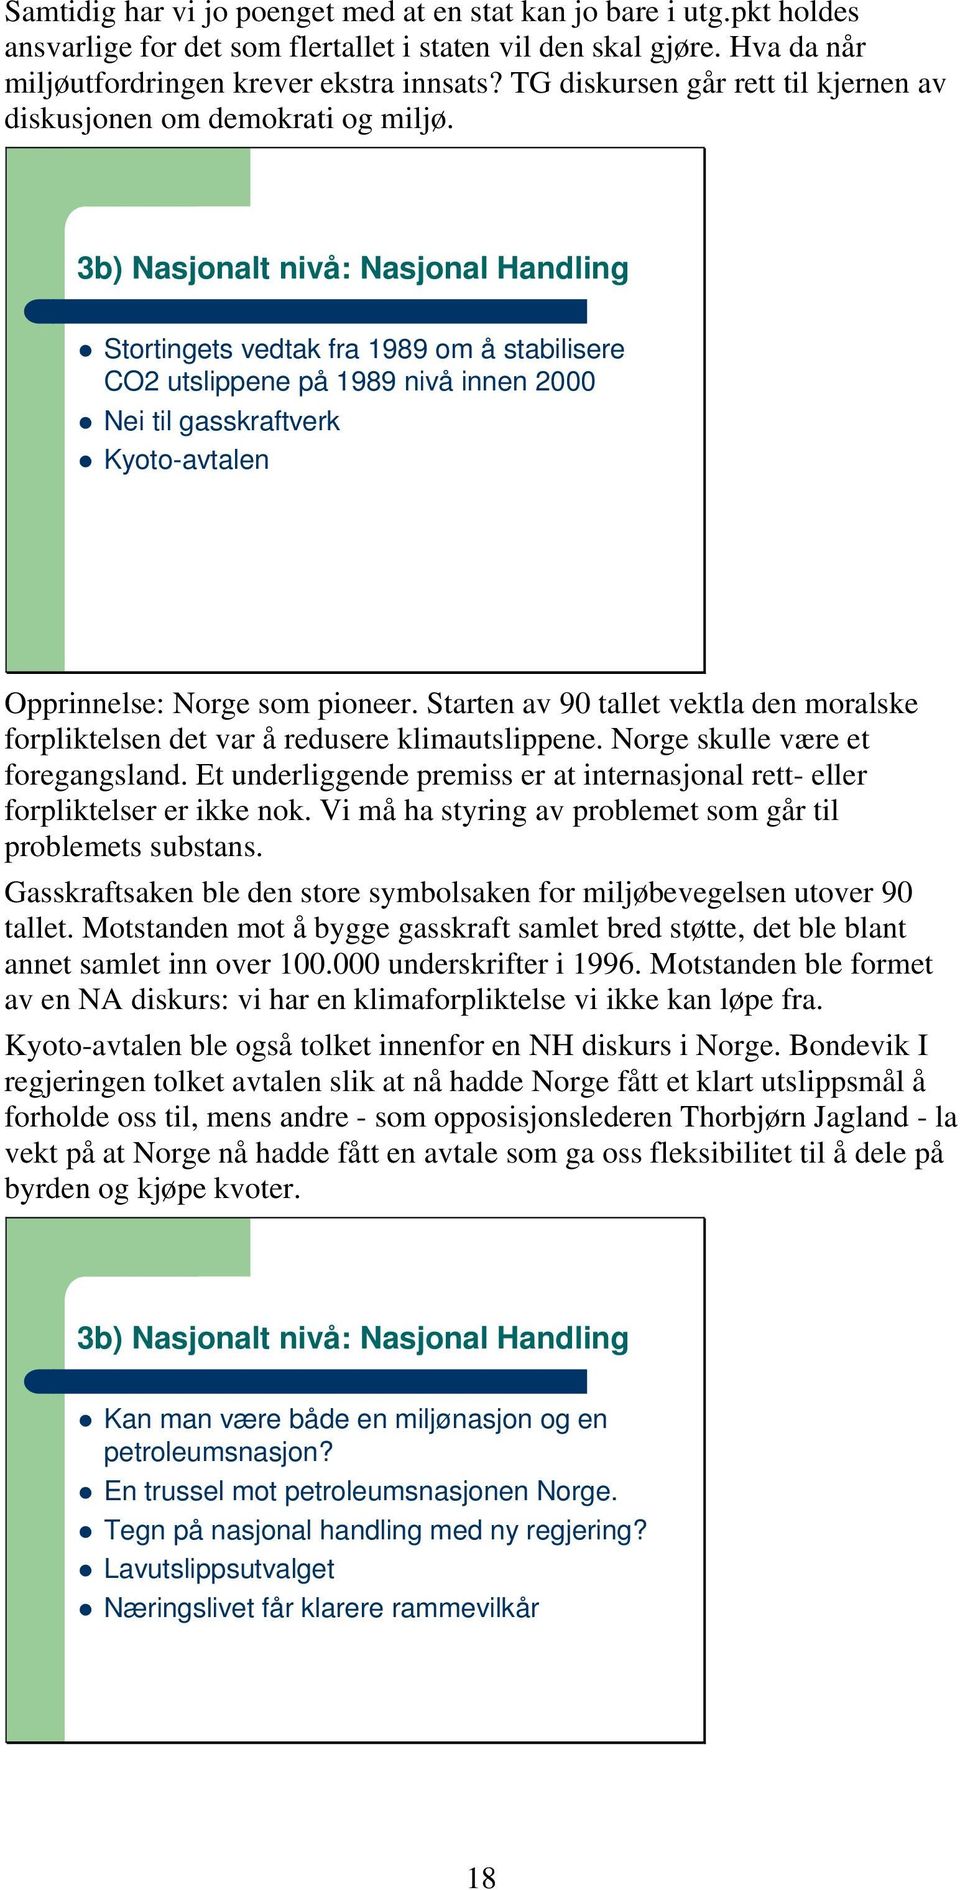 3b) Nasjonalt nivå: Nasjonal Handling Stortingets vedtak fra 1989 om å stabilisere CO2 utslippene på 1989 nivå innen 2000 Nei til gasskraftverk Kyoto-avtalen Opprinnelse: Norge som pioneer.